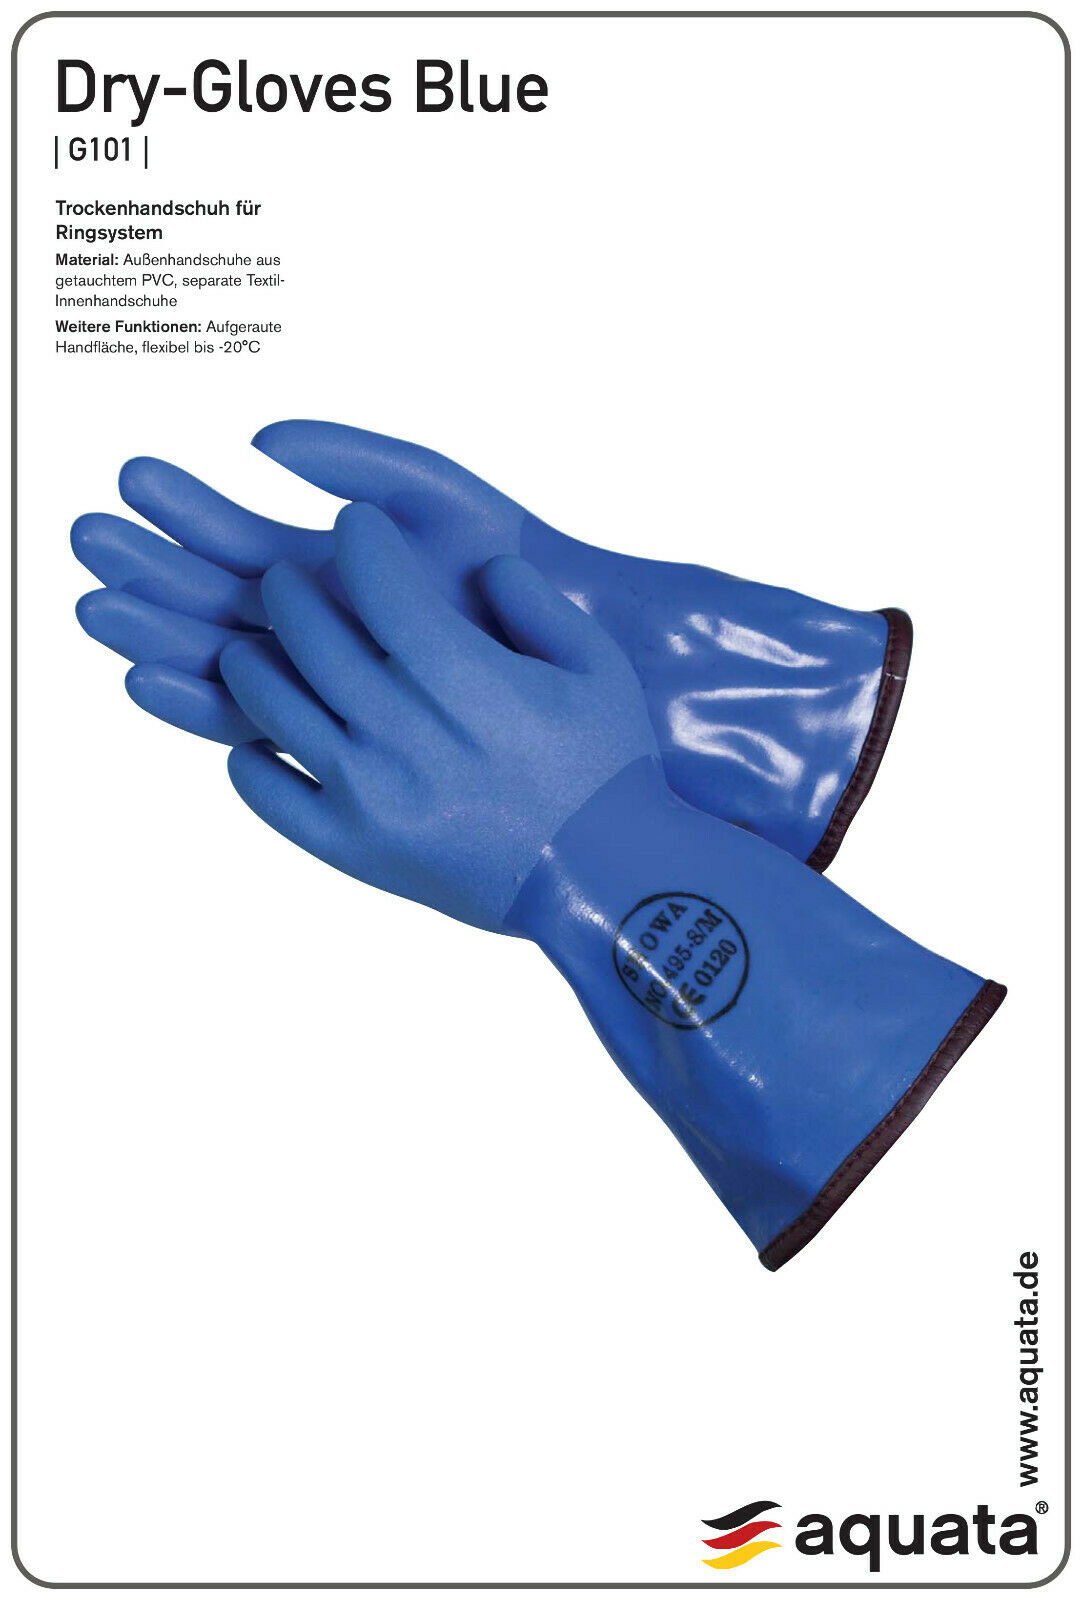 Trockentauchhandschuh blau mit Innenhandschuh